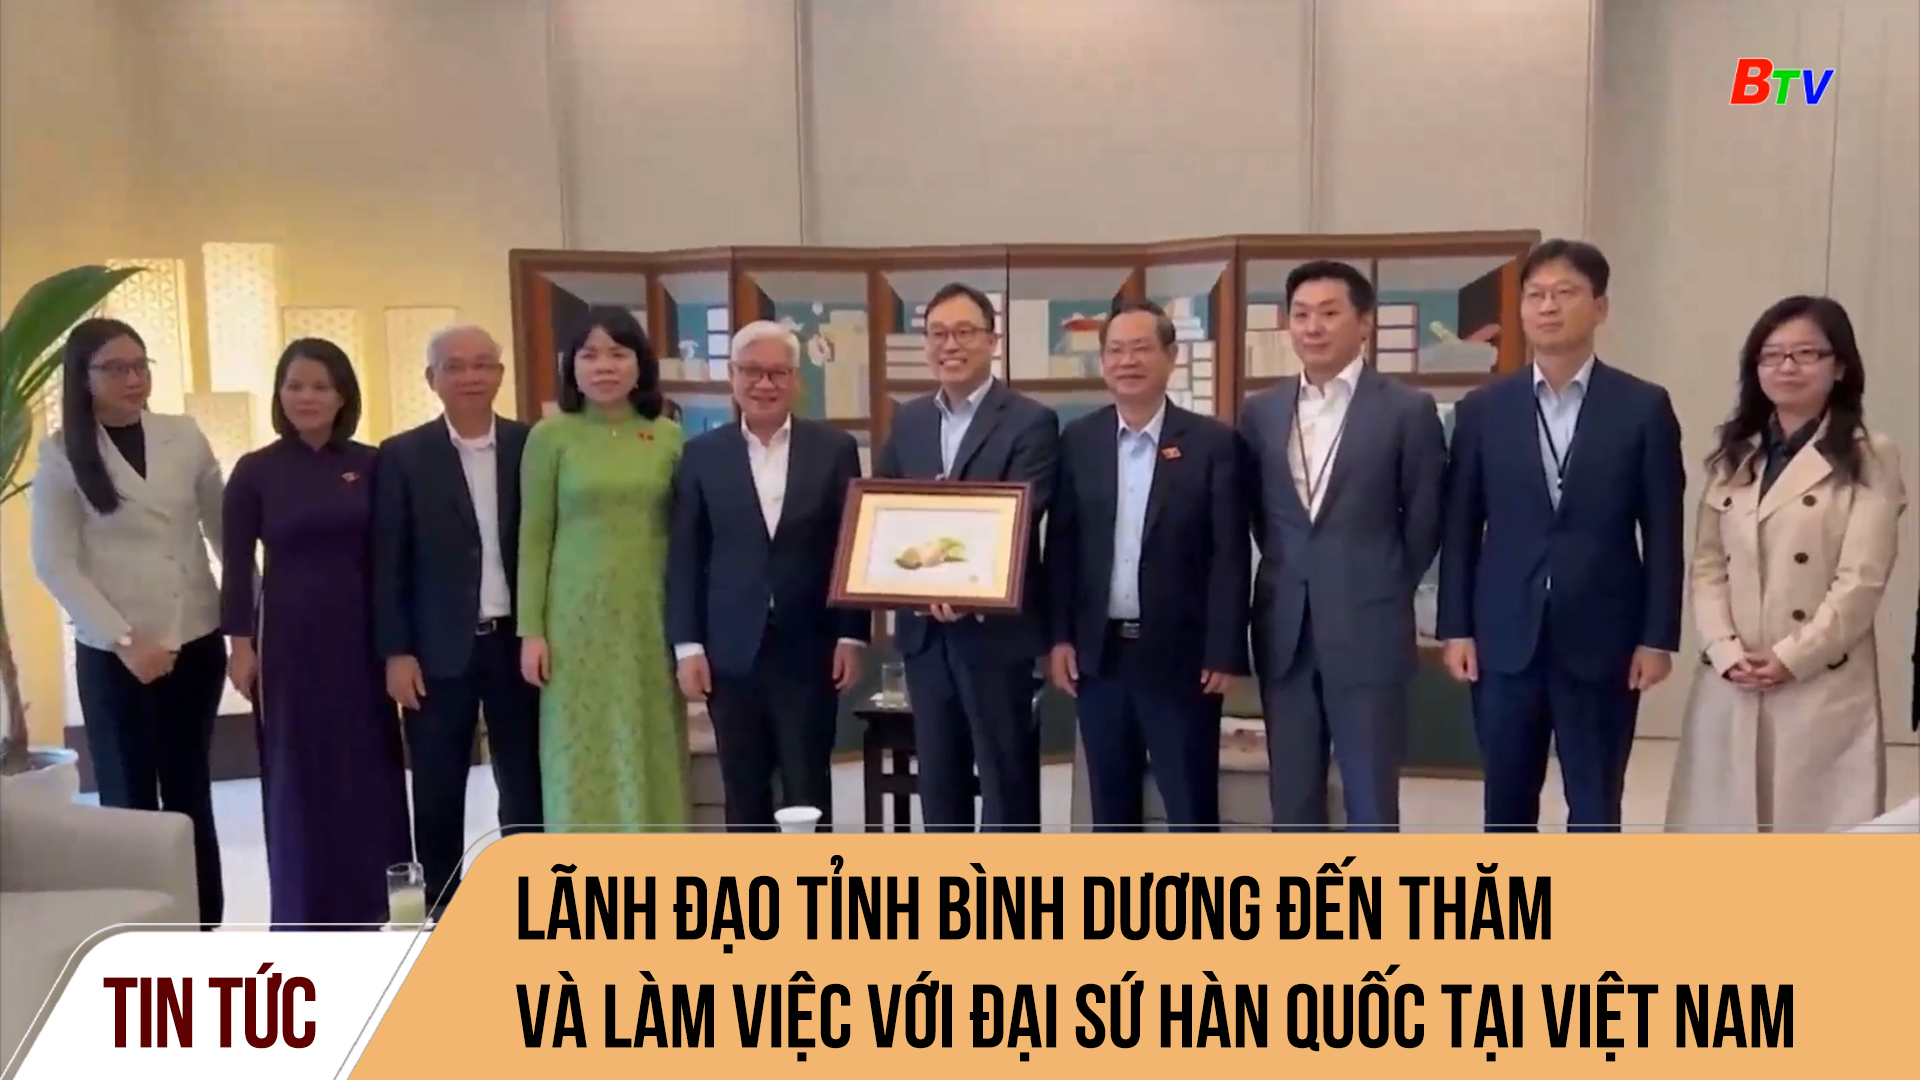 Lãnh đạo tỉnh Bình Dương đến thăm và làm việc với Đại sứ Hàn Quốc tại Việt Nam